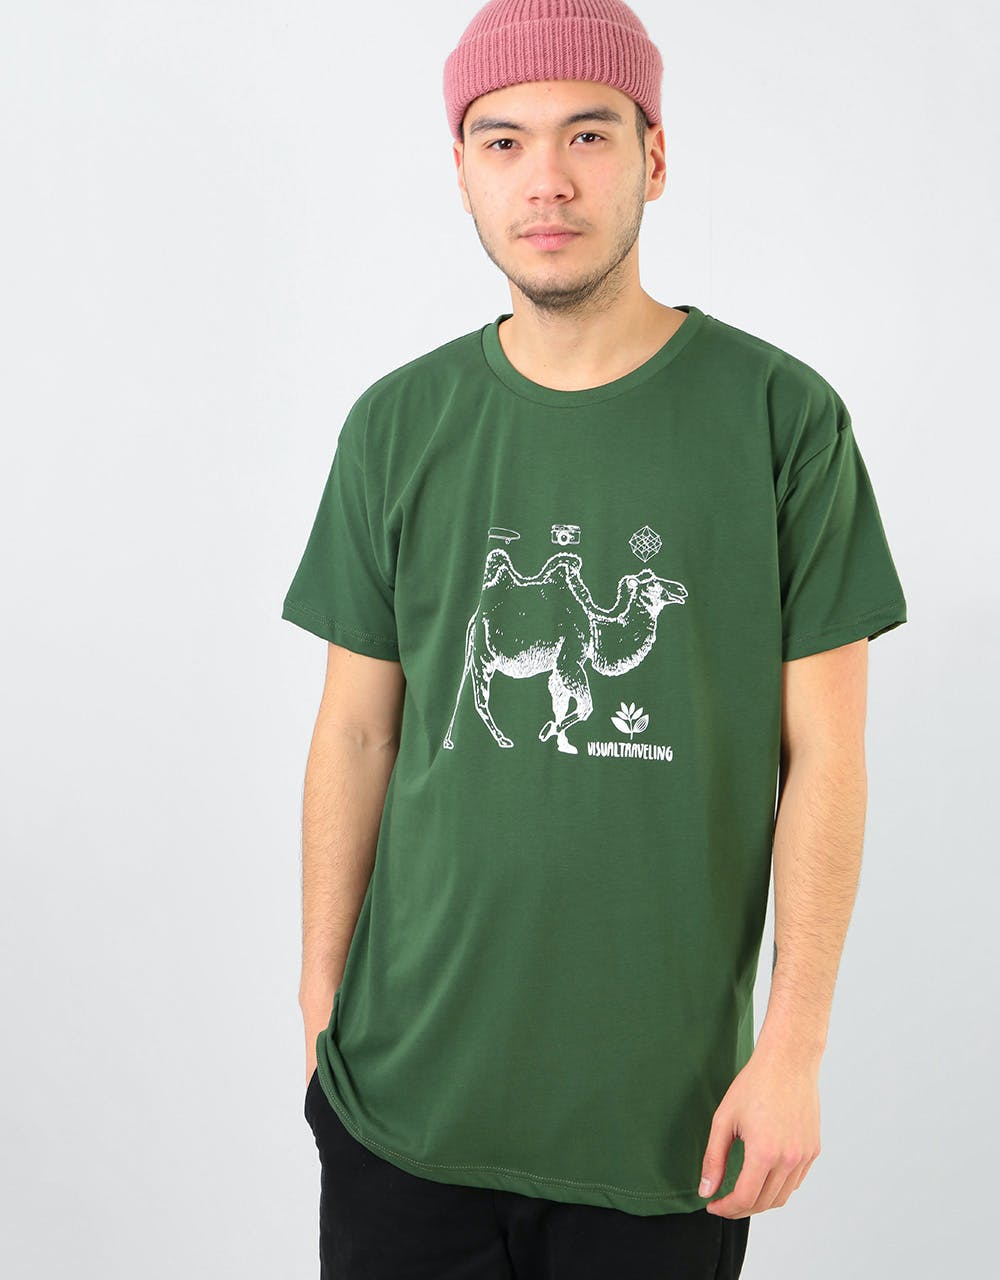 Magenta Camel T-Shirt - Green